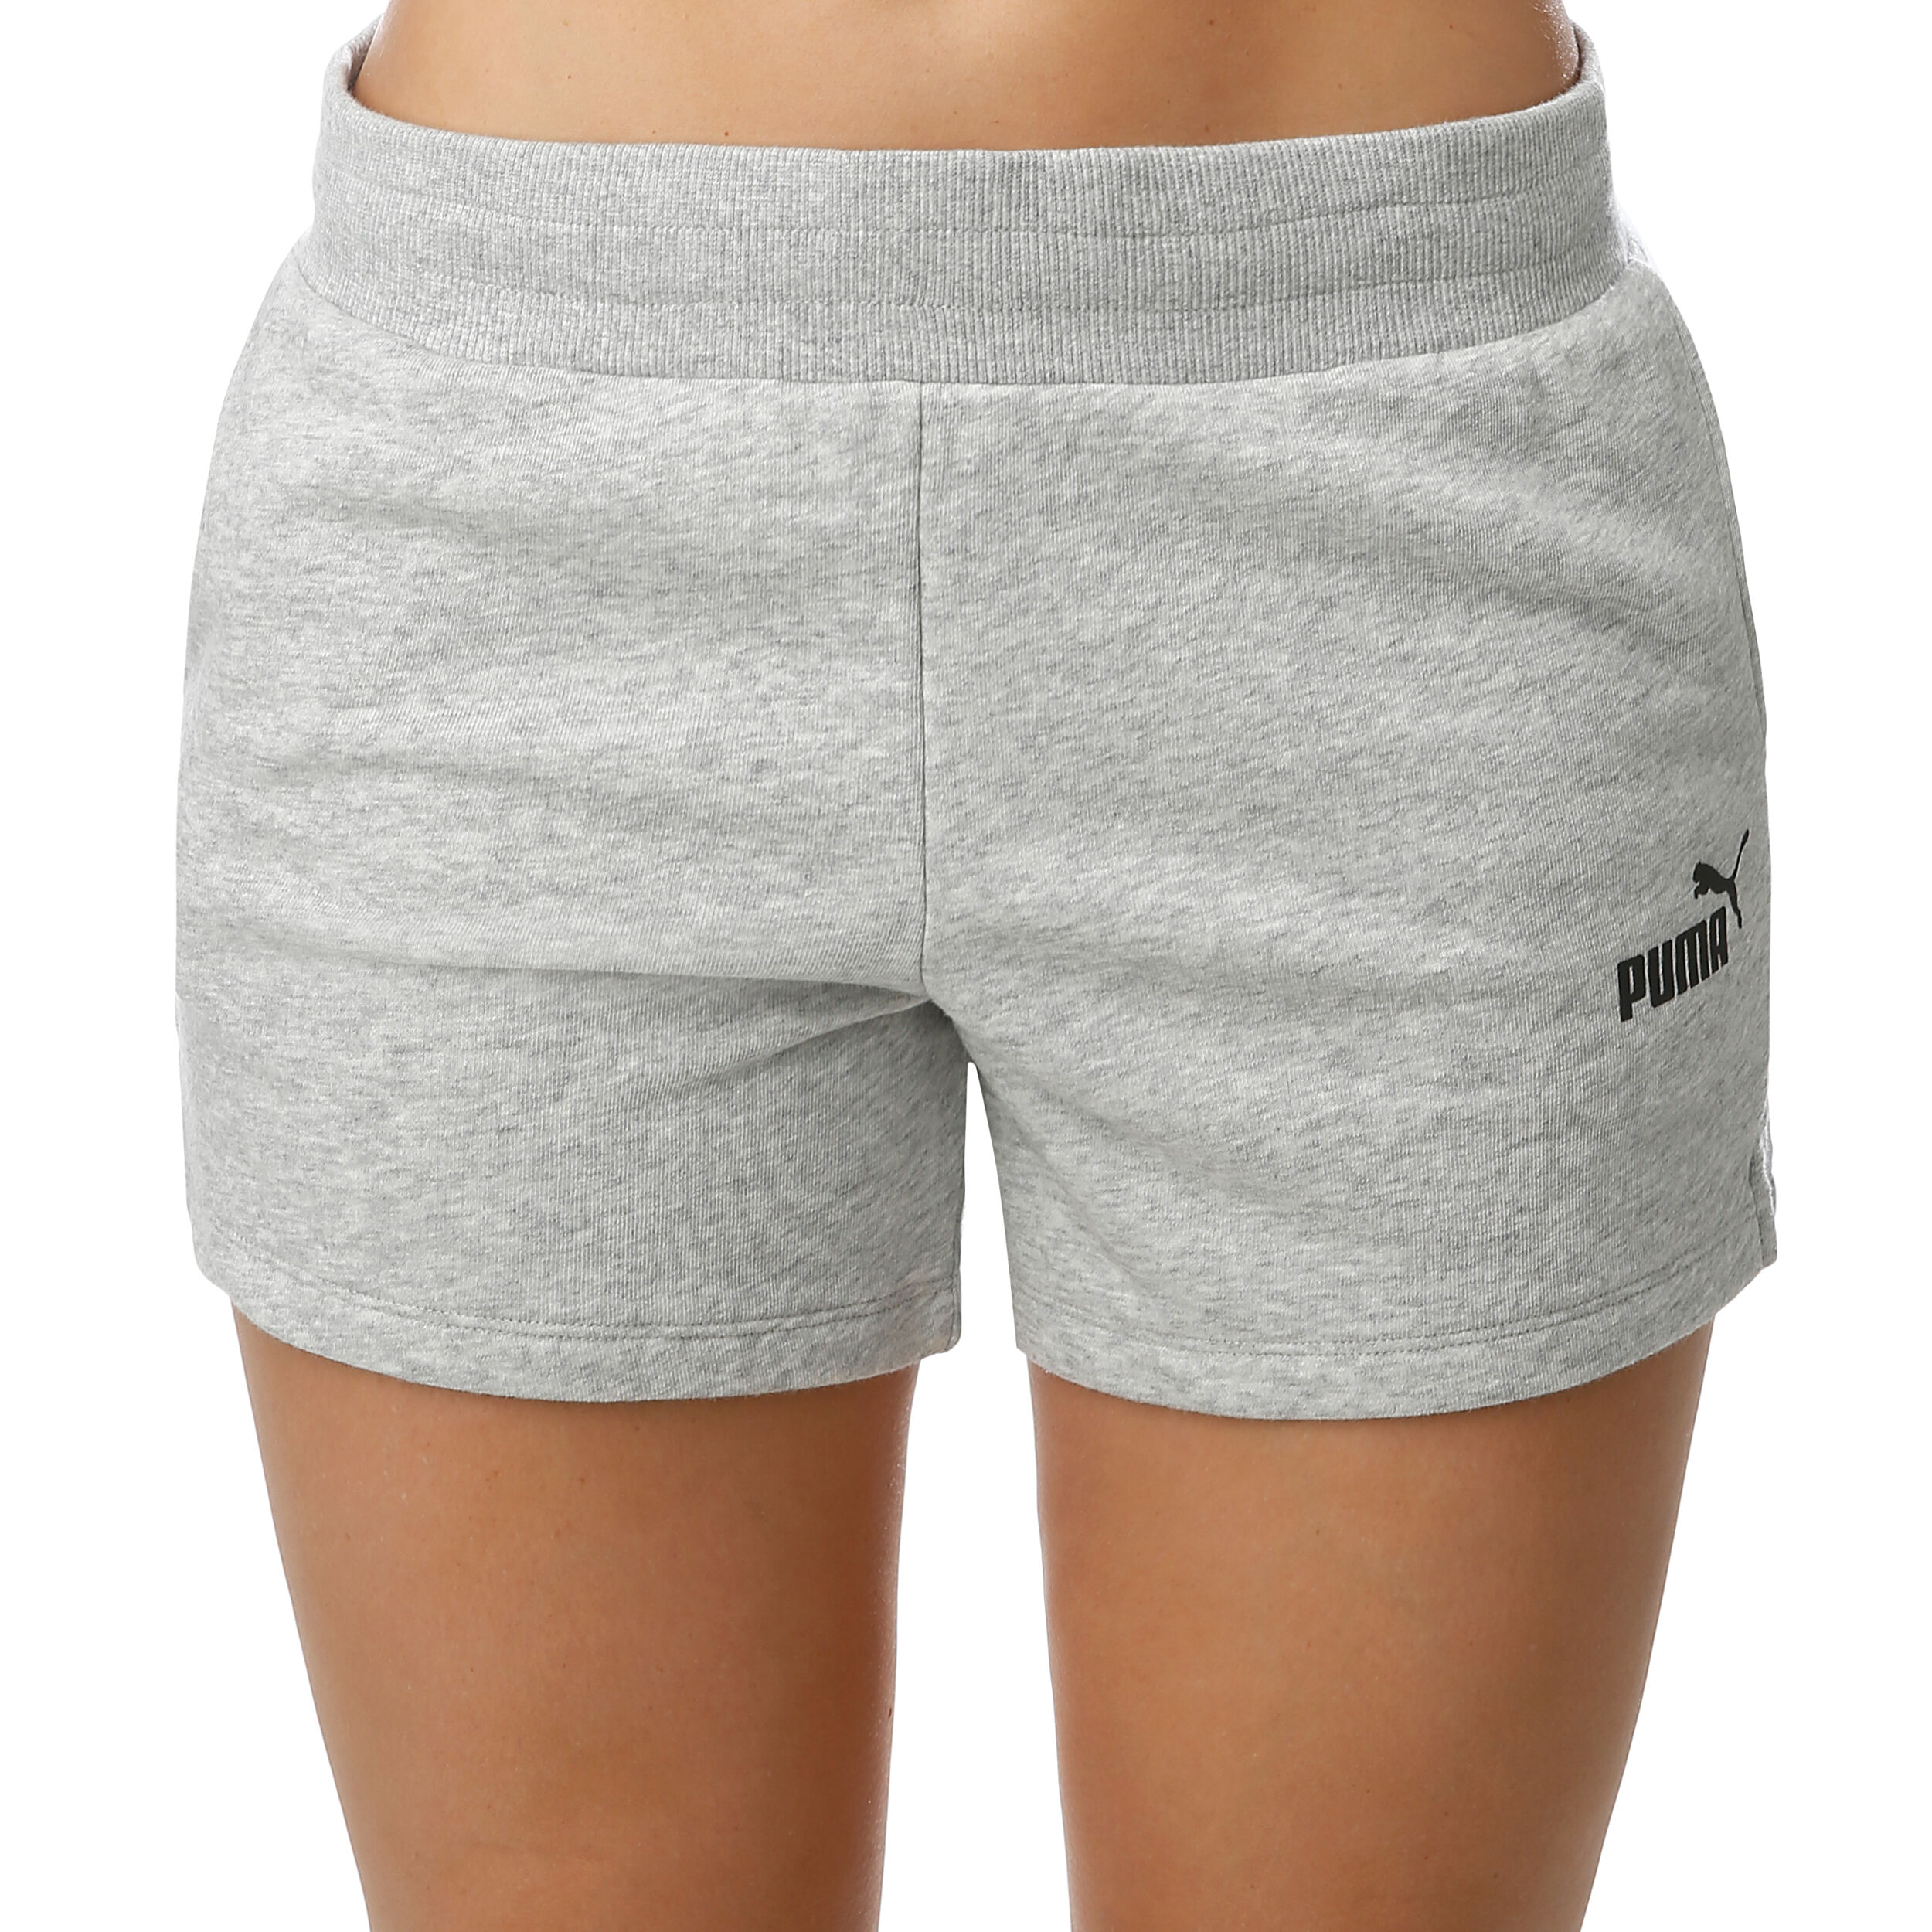 puma shorts uk